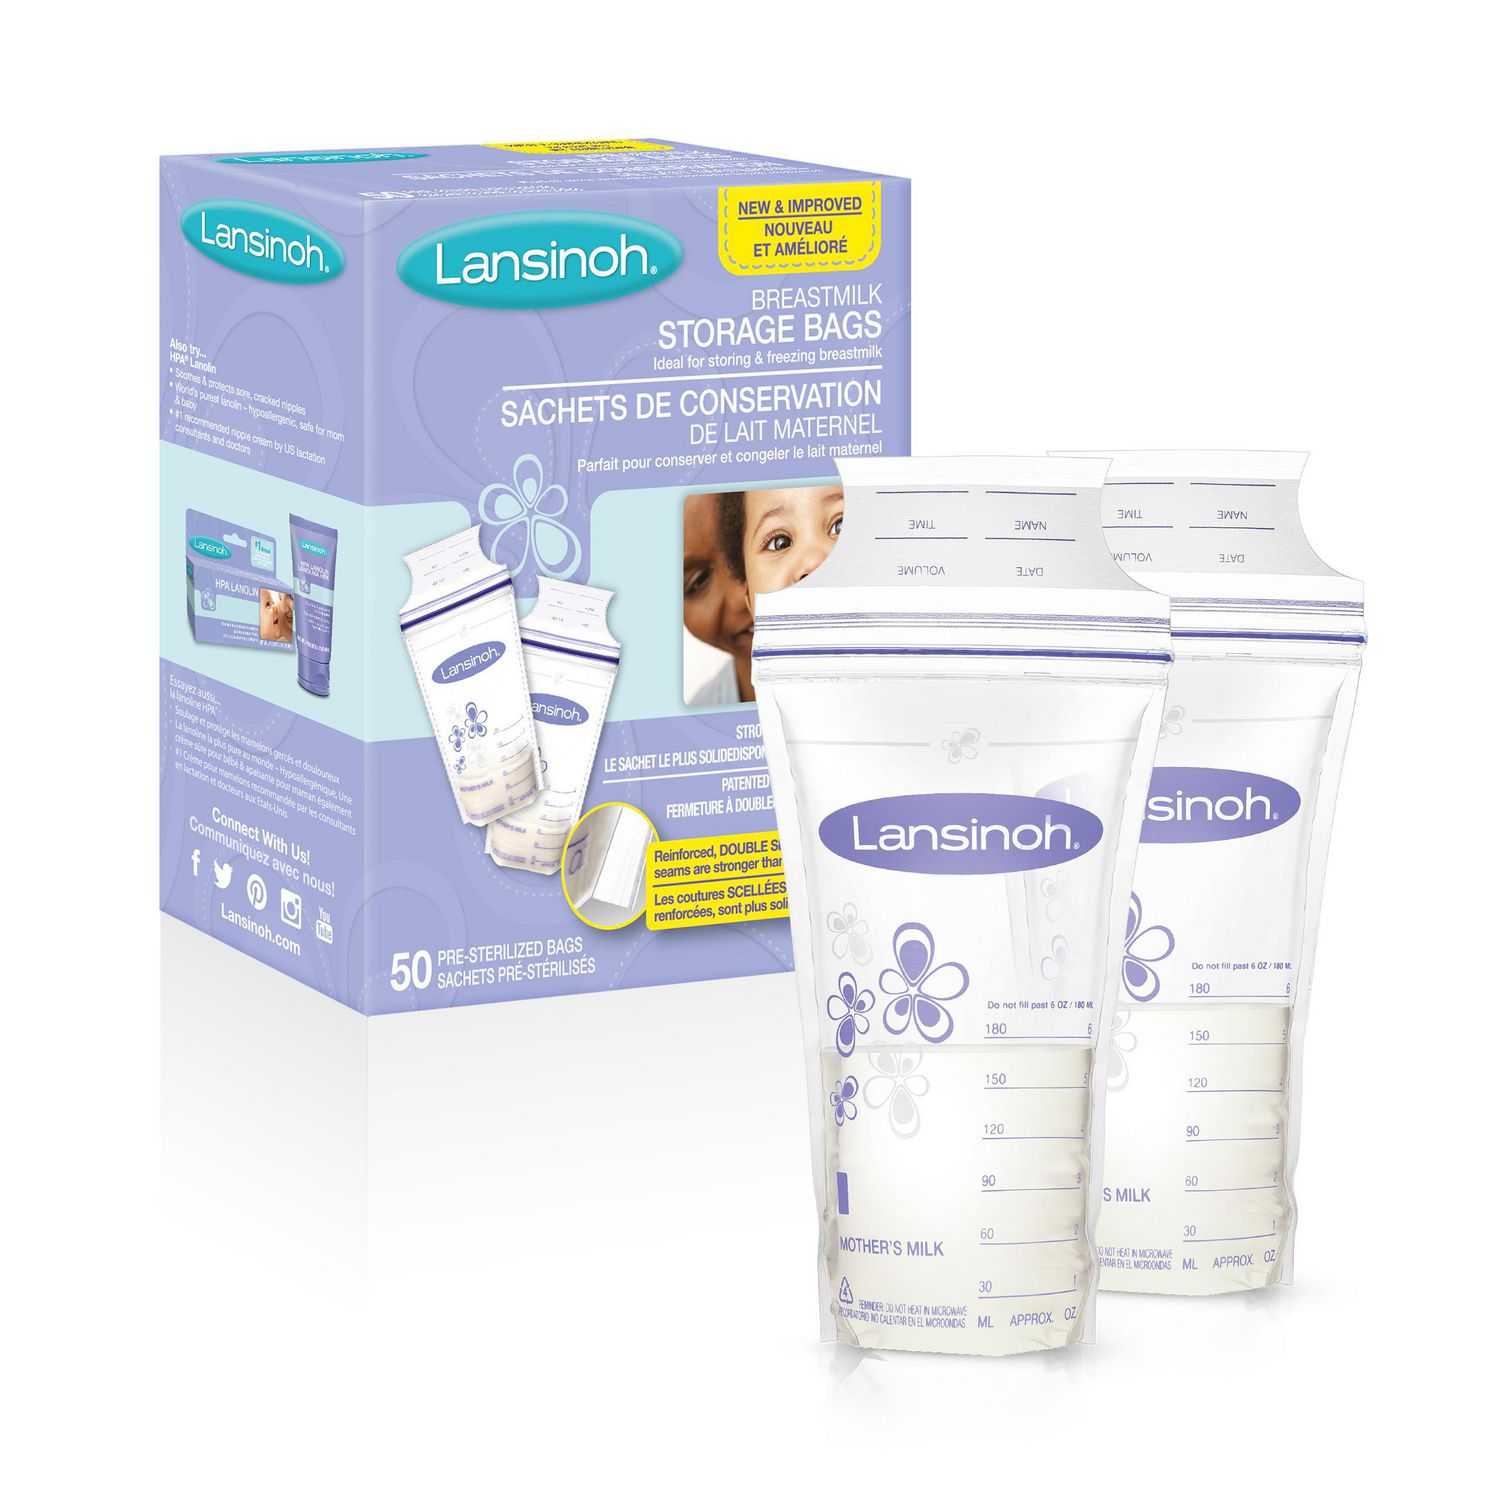 Best breastmilk storage – Lansinoh Breastmilk Storage Bags with Ziploc tops and measurements up the side